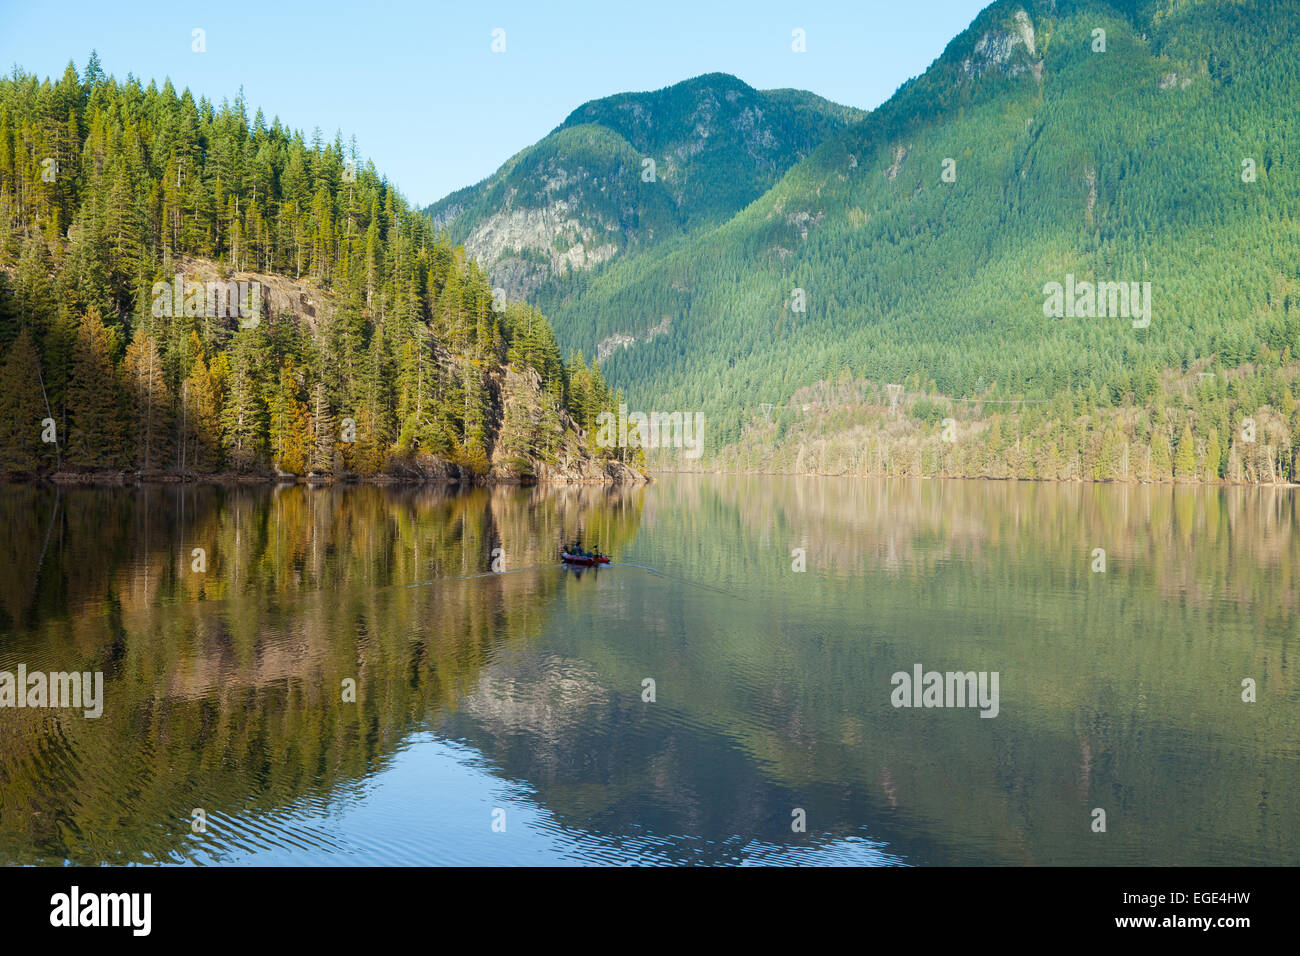 Die Berge rund um Buntzen Lake in British Columbia Kanada spiegeln sich im Wasser. Stockfoto